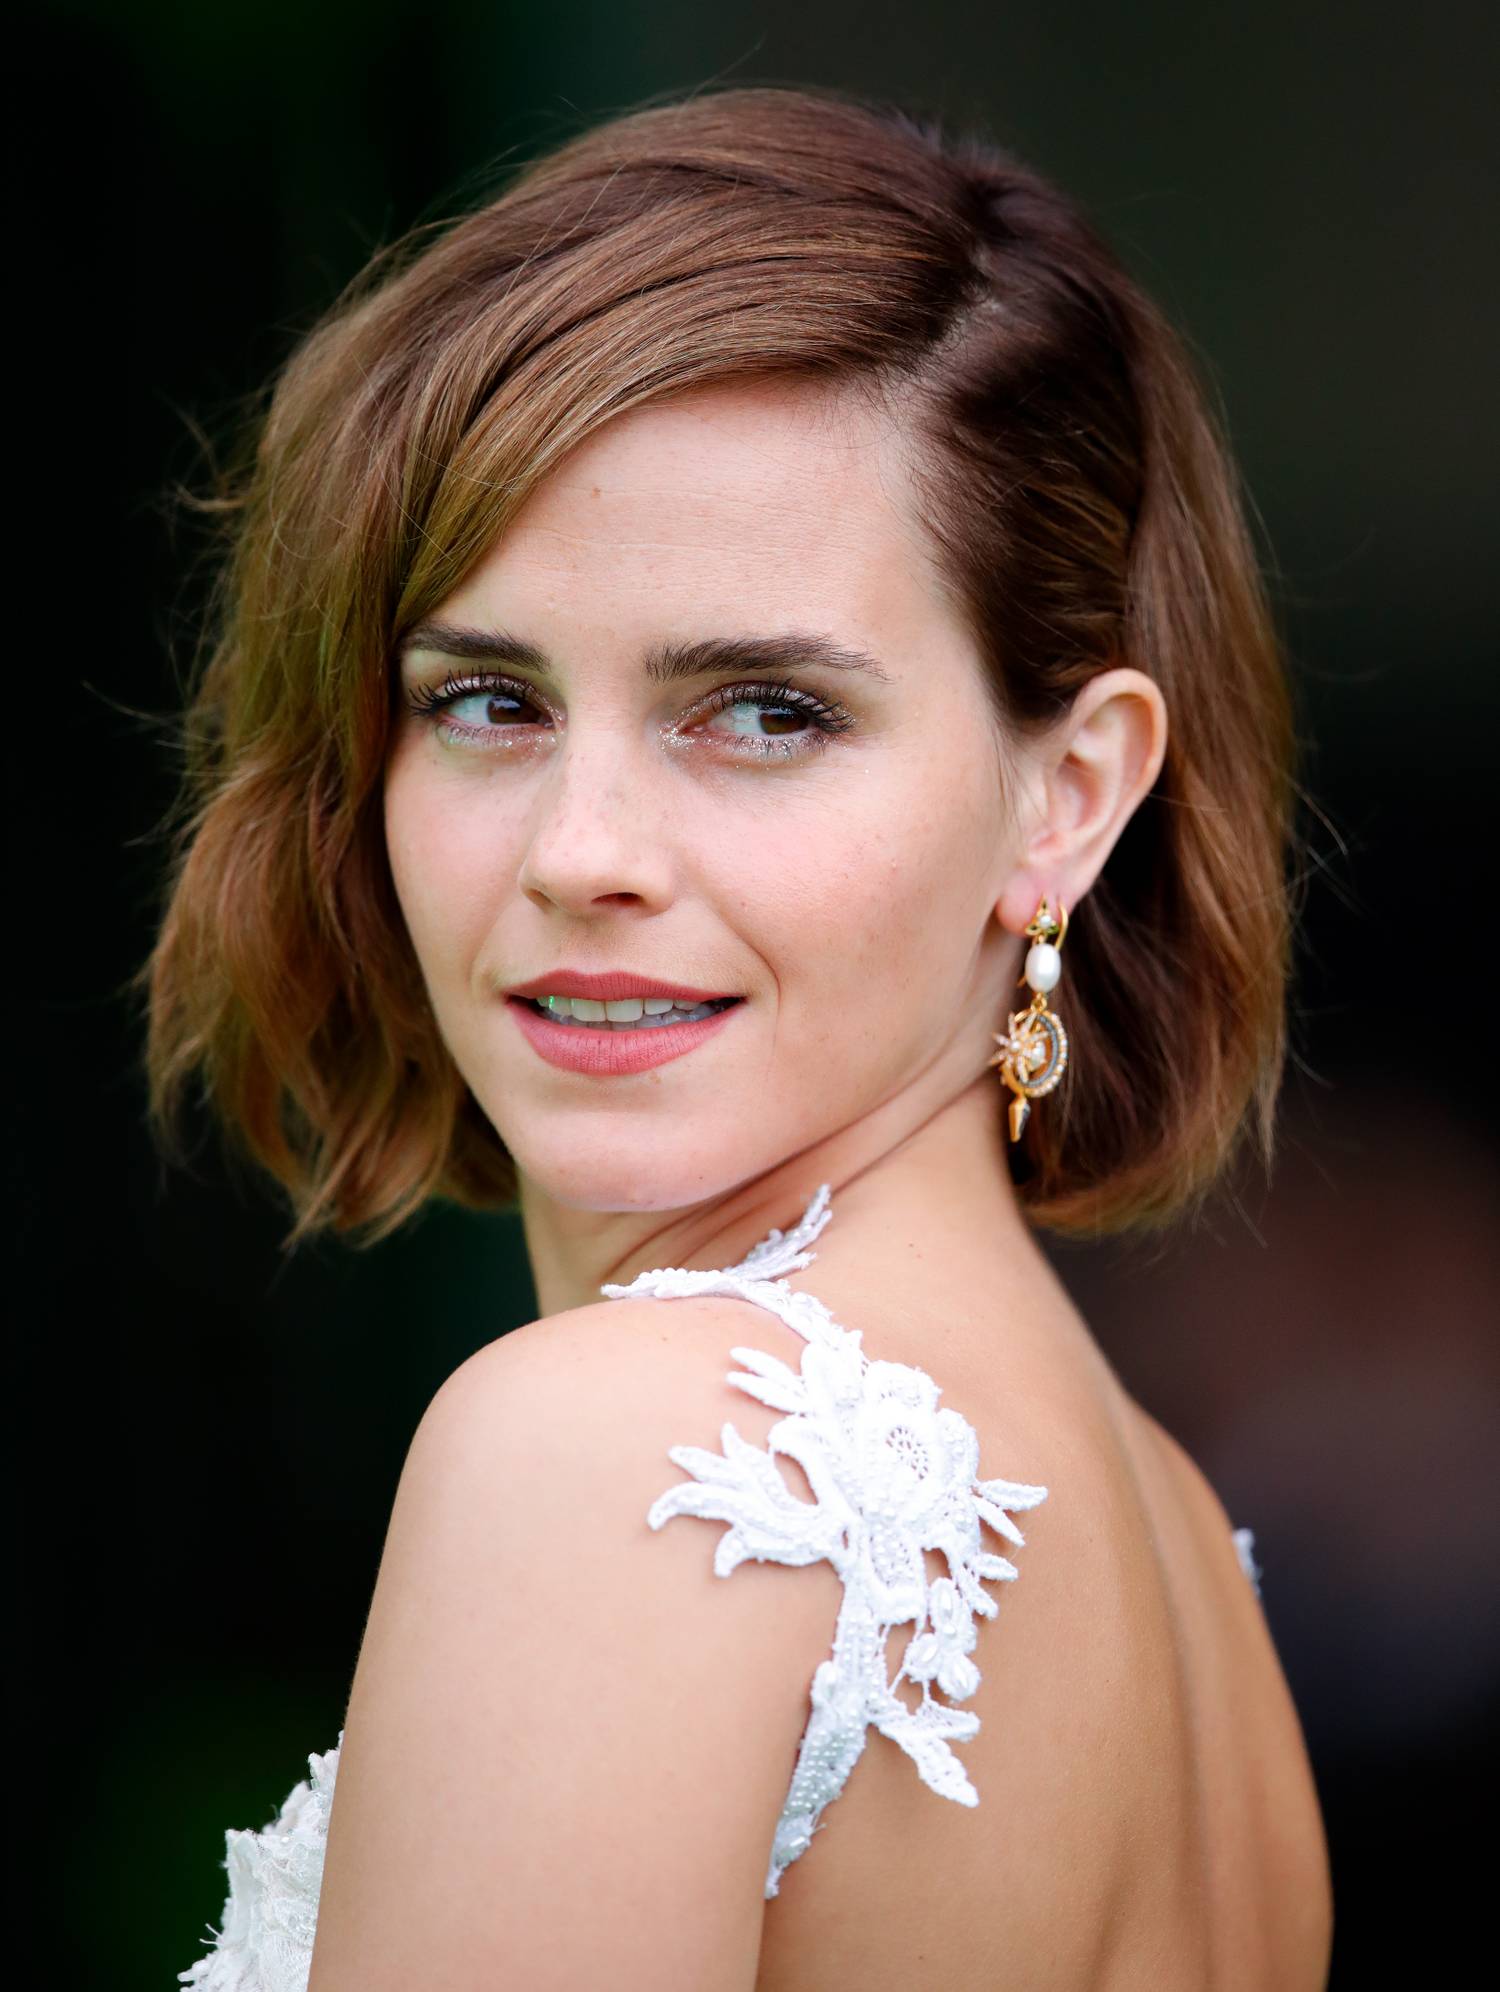 Bár a Harry Potter-filmek magabiztos Hermionéjaként ismerte meg a nagyvilág, Emma Watson sokat küzd az önbizalomhiánnyal, gondja volt a testképével, eleinte az is megviselte, hogy teljesen más karakter jelenik meg róla a címlapokon, mint amilyennek érzi magát. Azt mondja, az egyetemen töltött idő alatt sokat javult önértékelése.